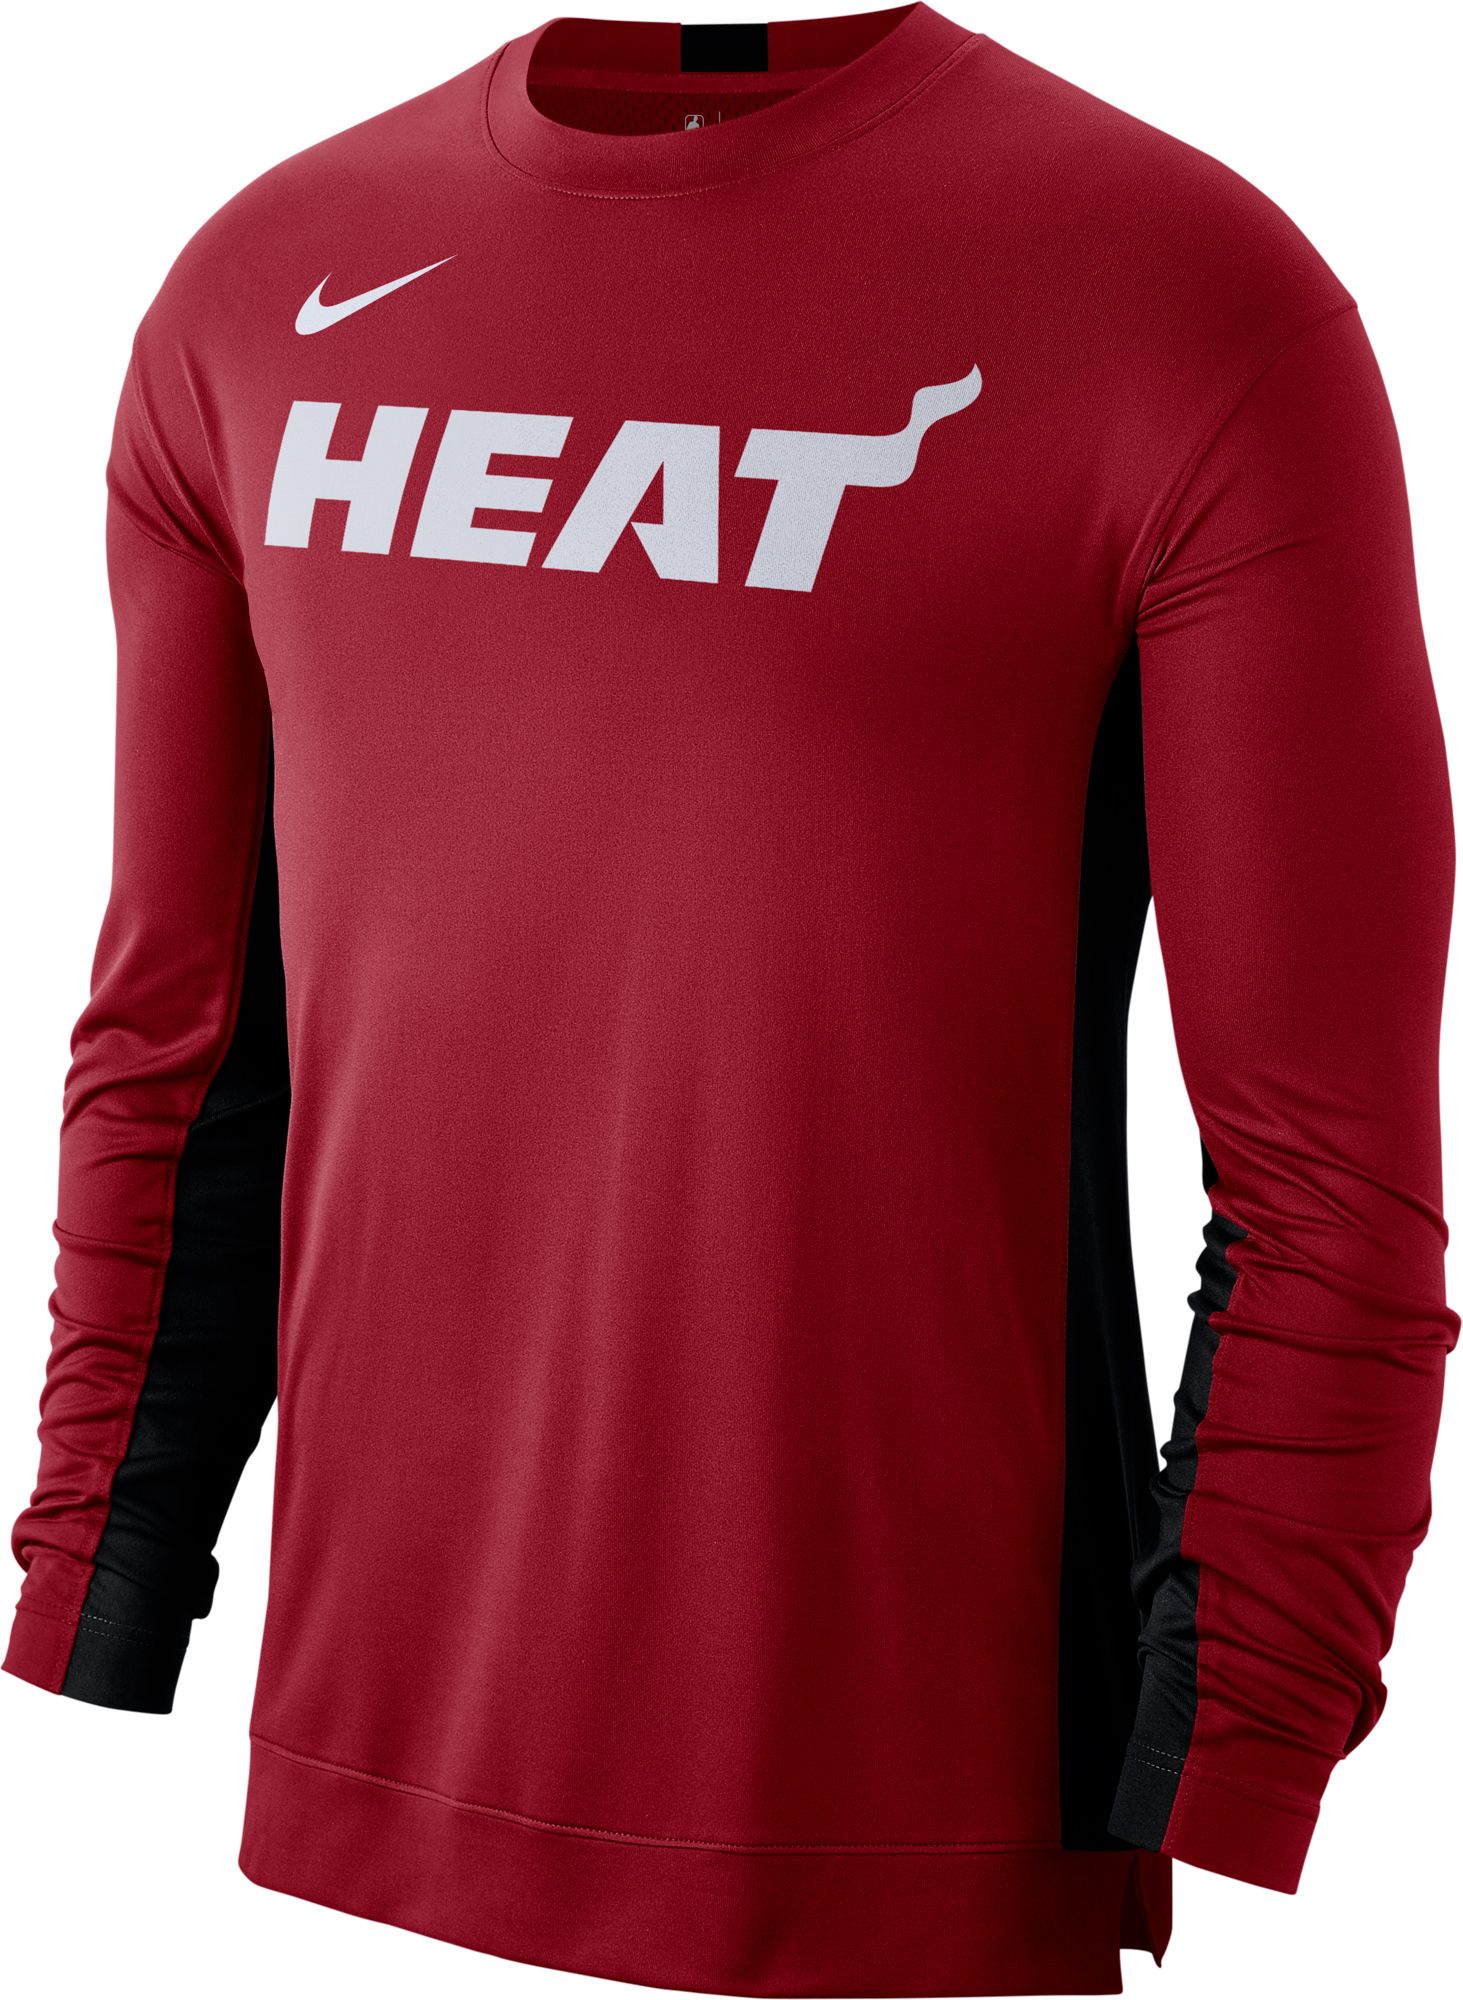 heat long sleeve jersey